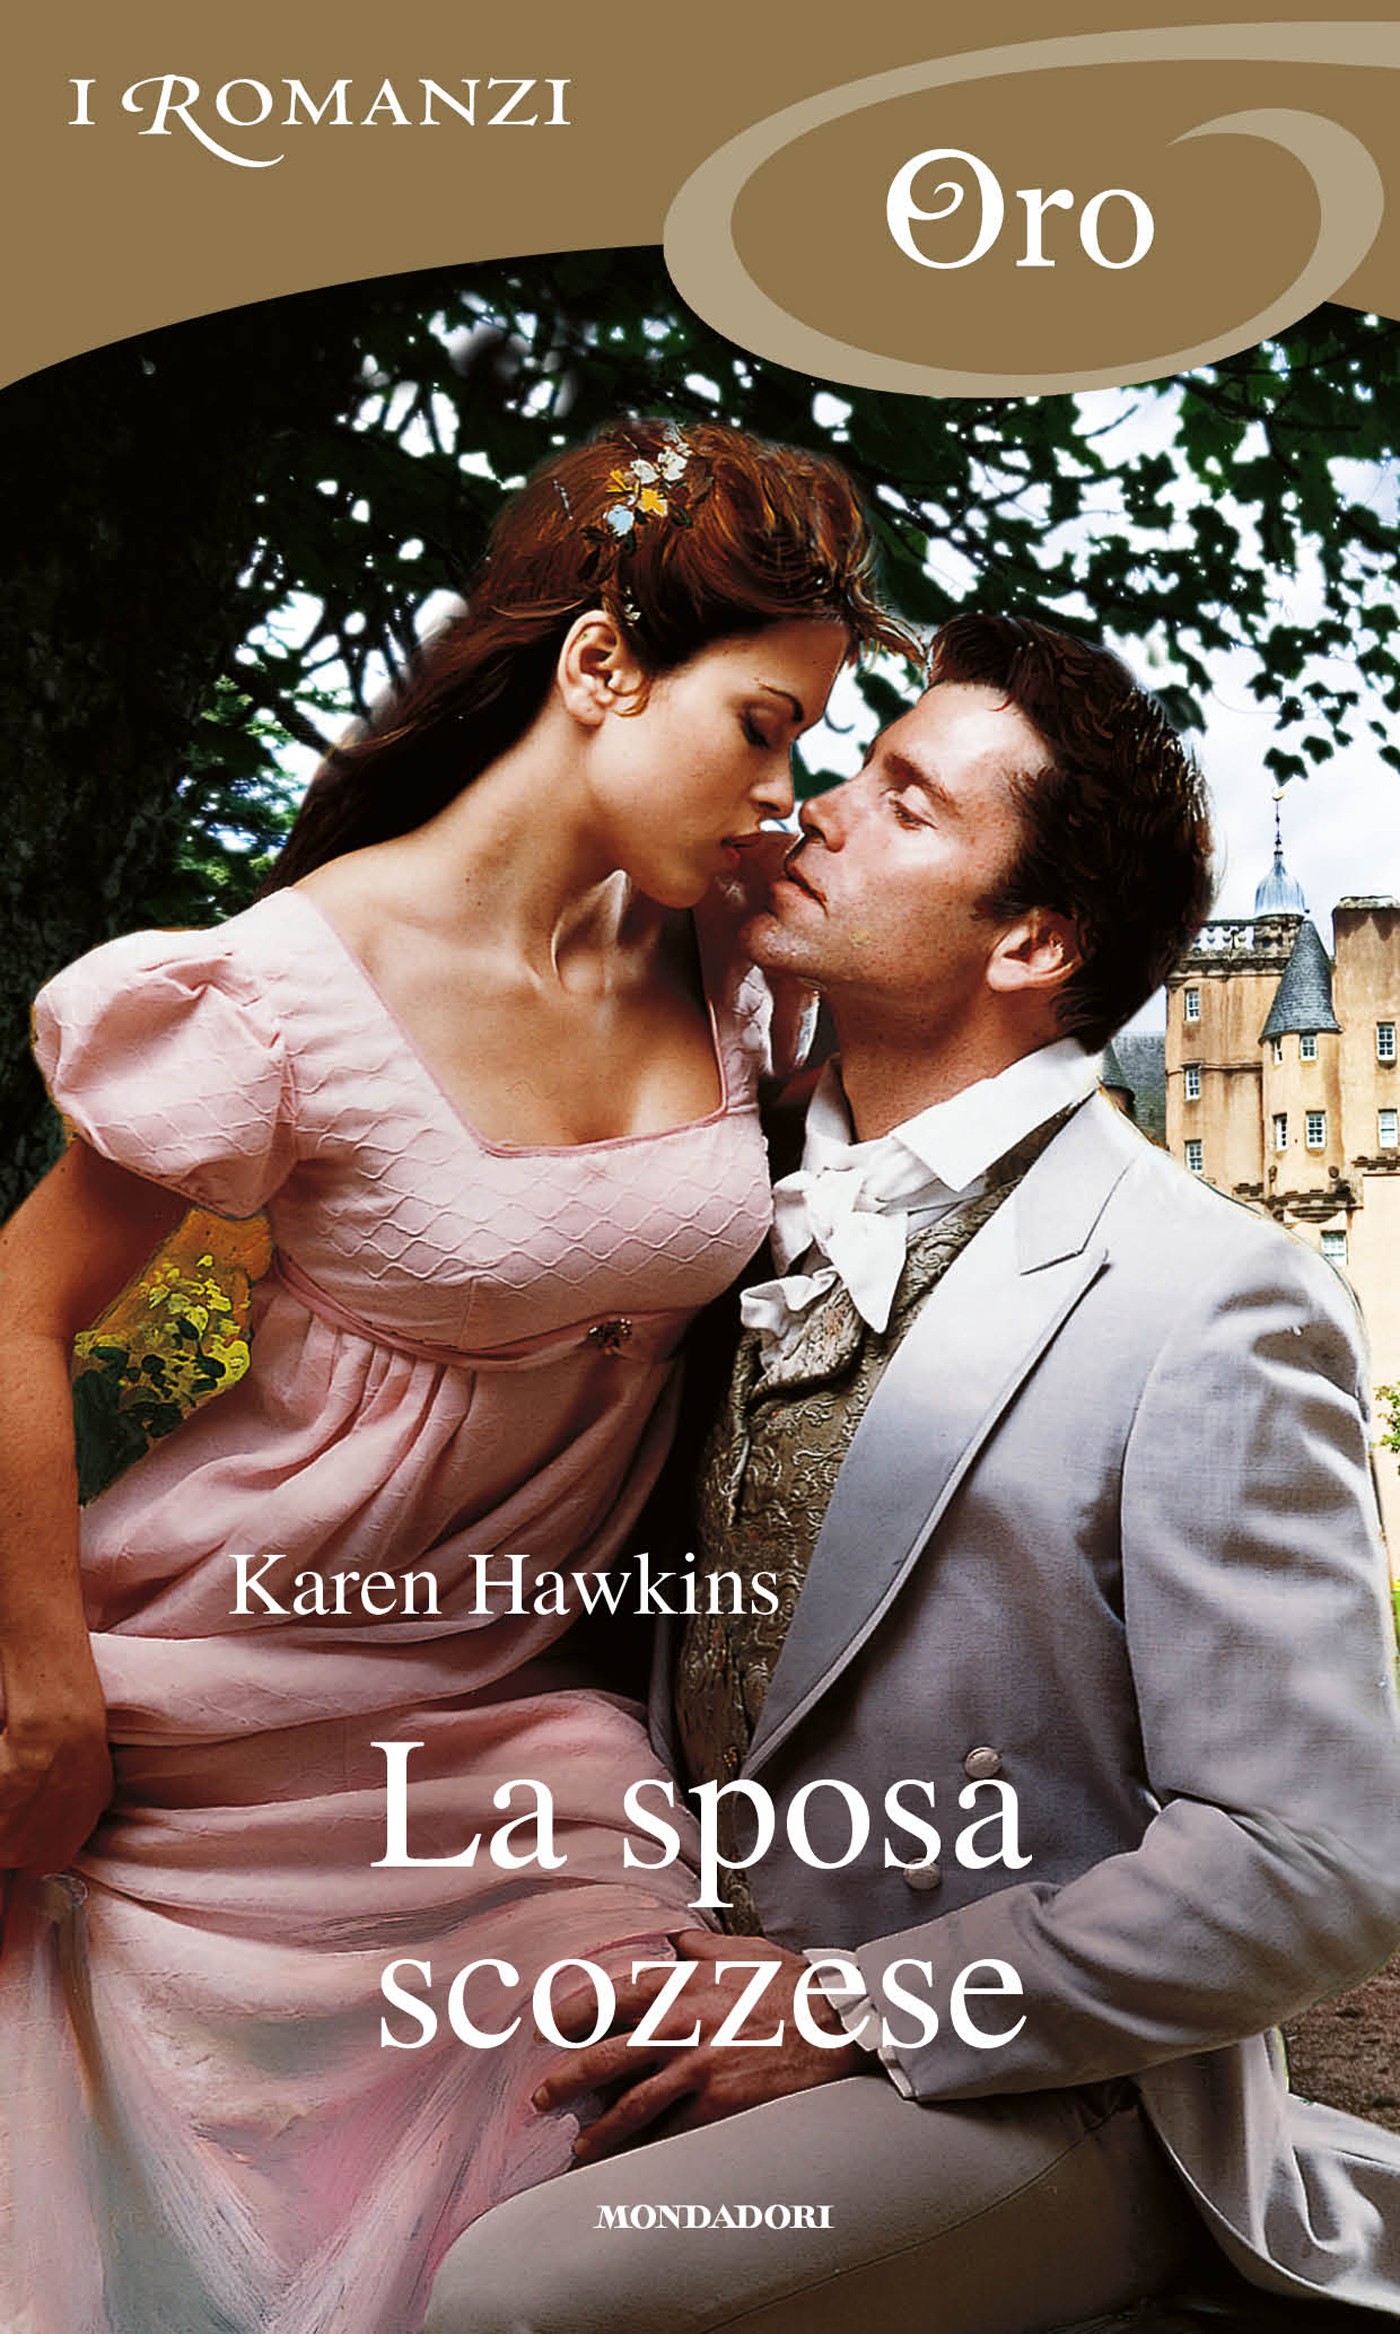 La sposa scozzese (I Romanzi Oro) - Librerie.coop